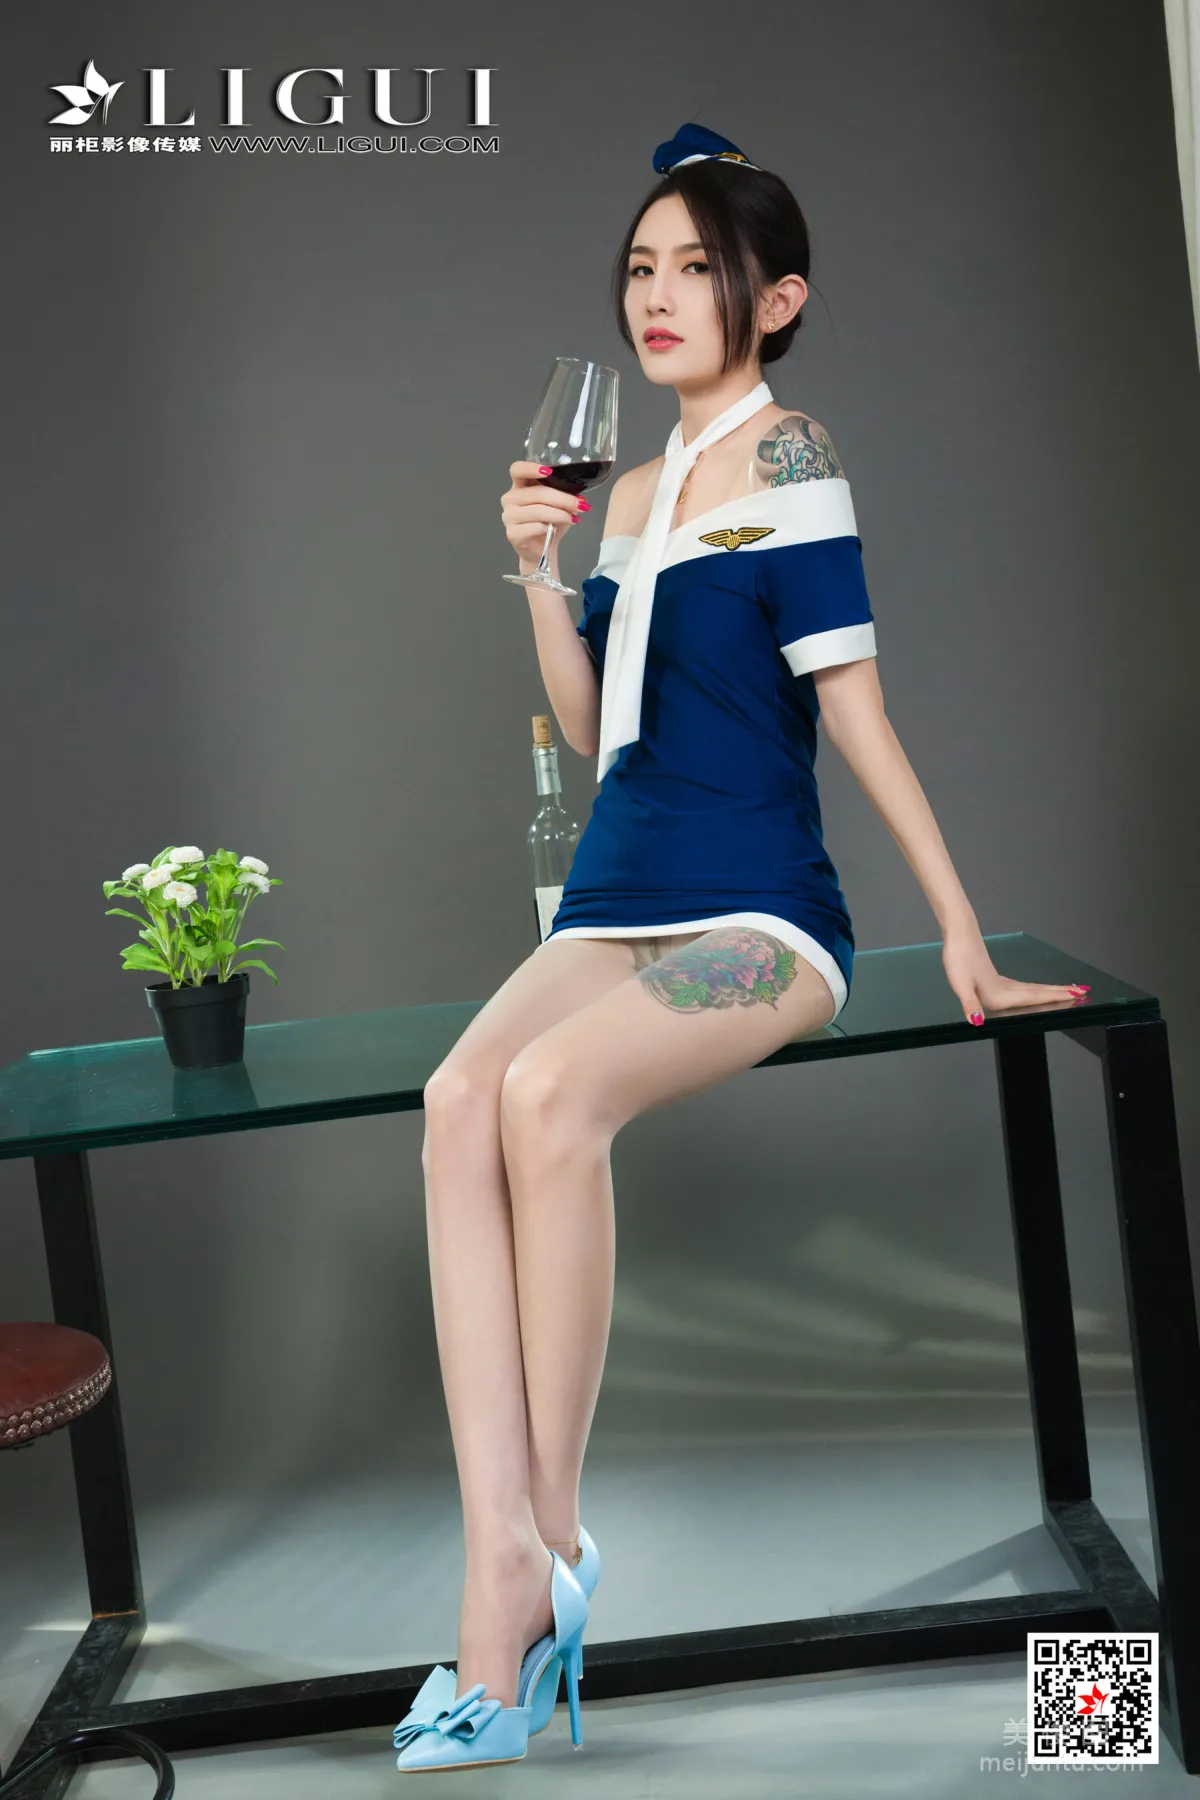 [丽柜Ligui] Model 甜甜 《醉酒香莲》2